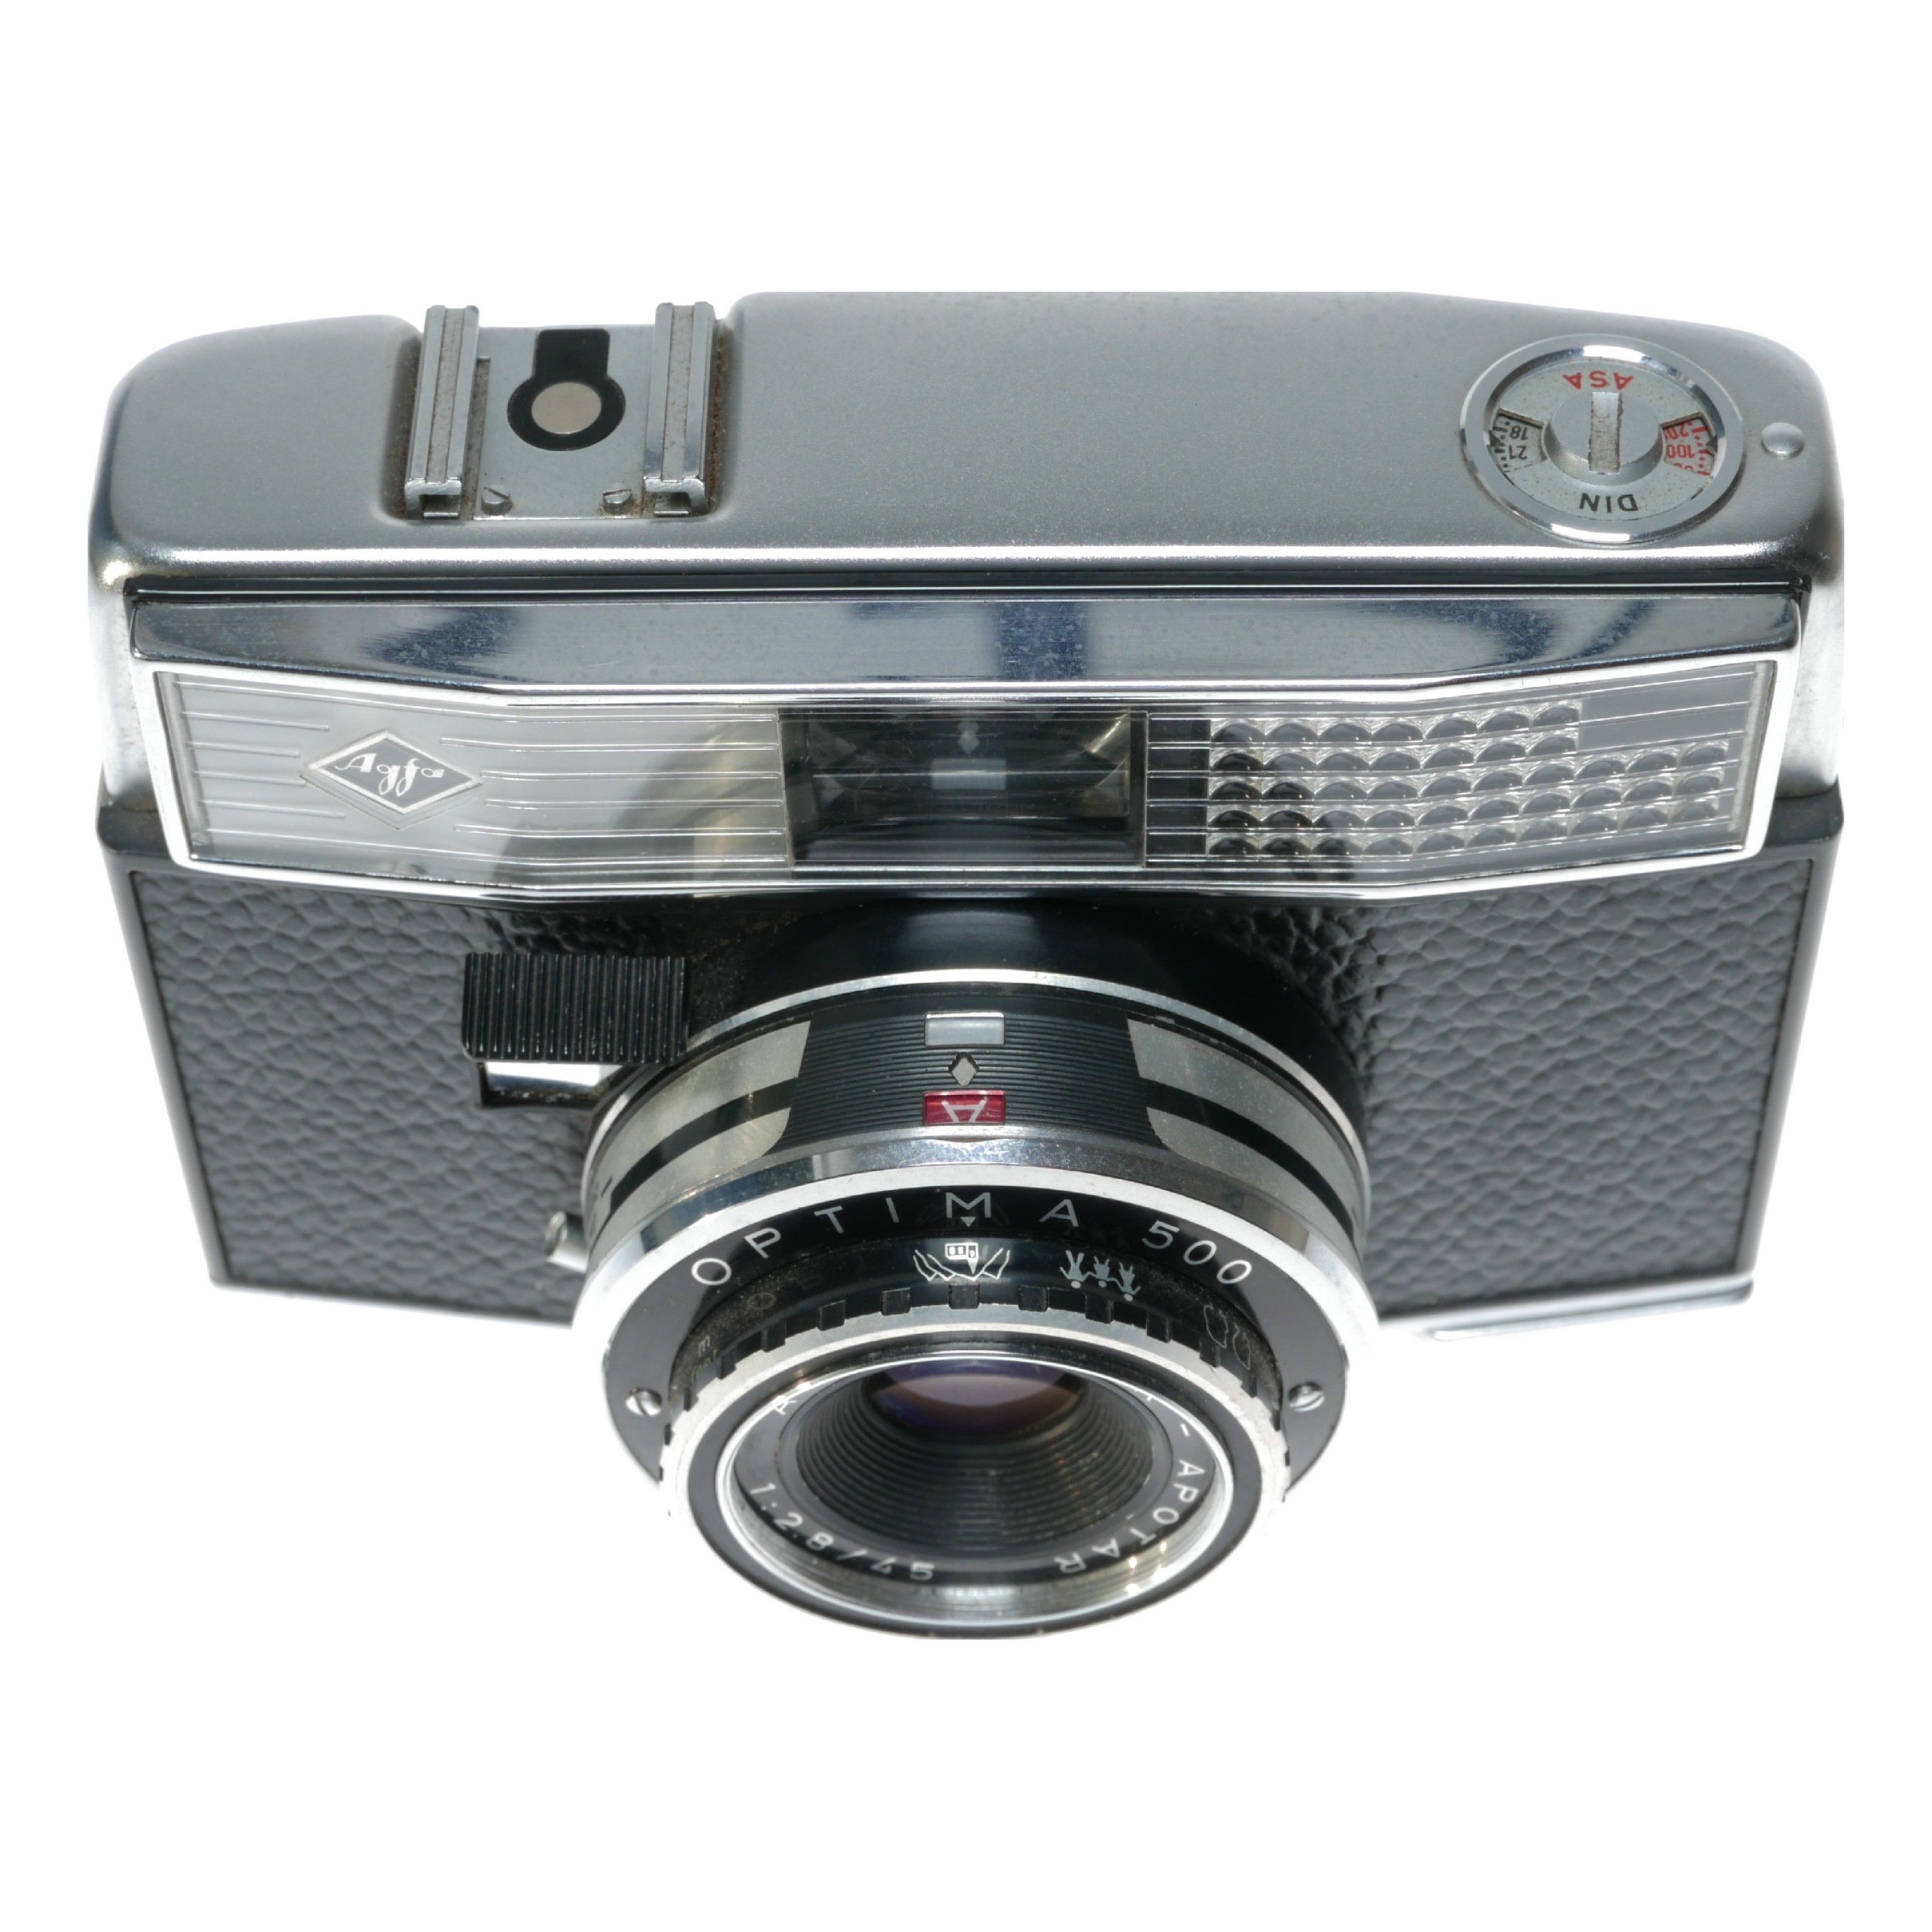 Agfa Agfa Optima 500 35mm Film Camera Color-Apotar 1:2.8/45 Compur 